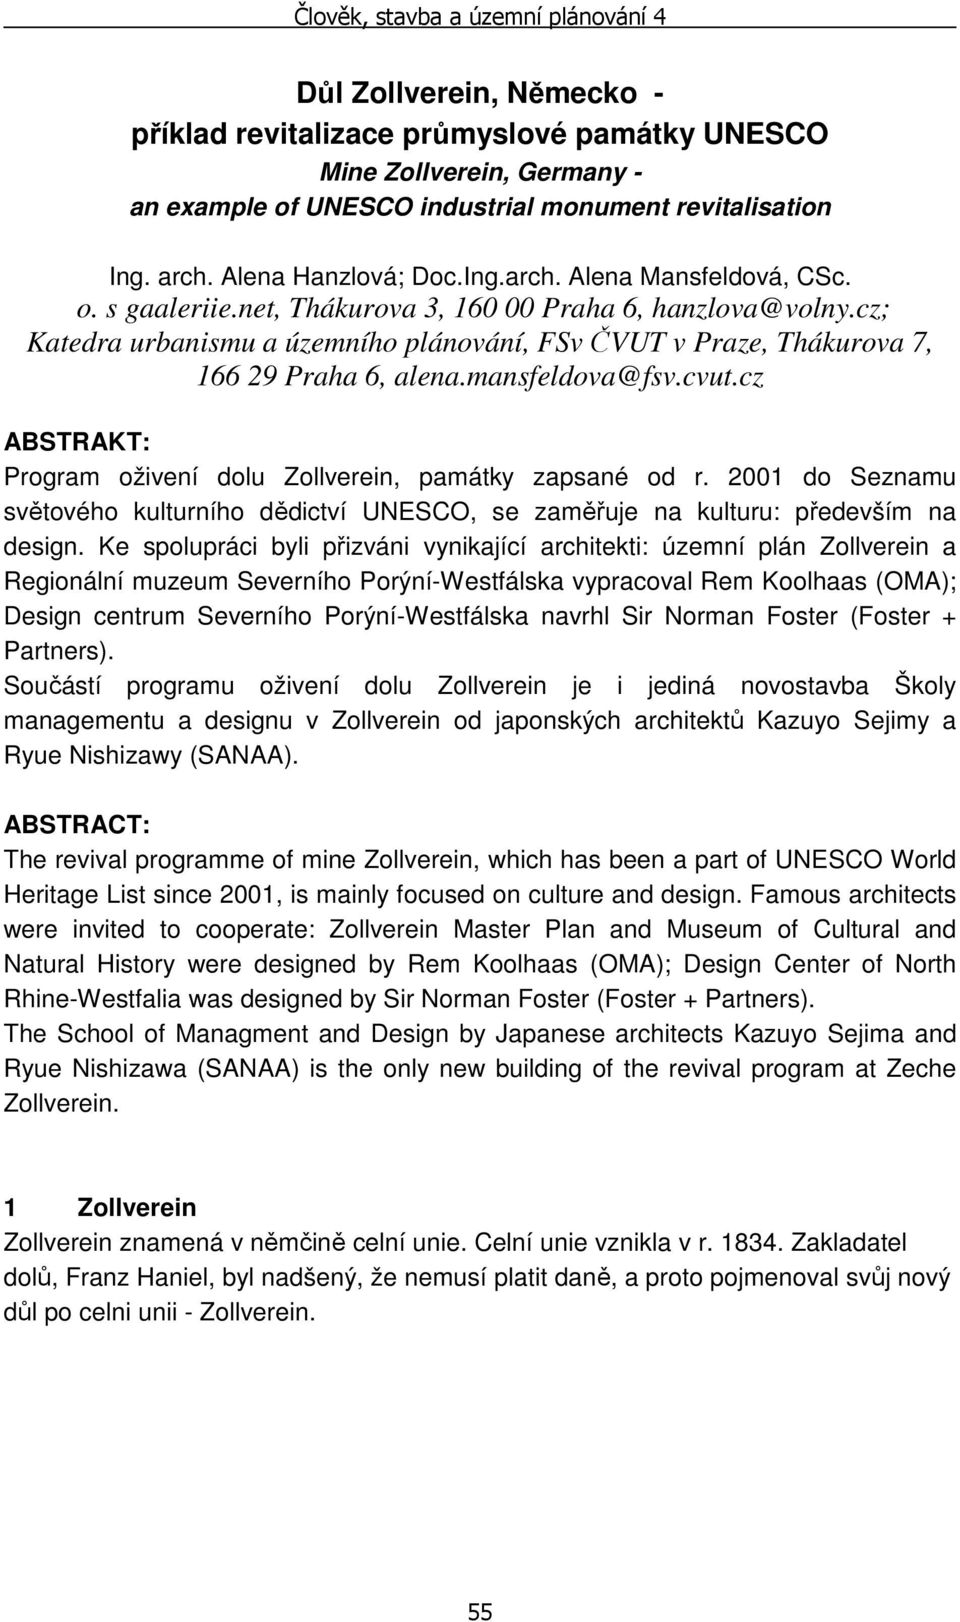 cz ABSTRAKT: Program oživení dolu Zollverein, památky zapsané od r. 2001 do Seznamu světového kulturního dědictví UNESCO, se zaměřuje na kulturu: především na design.